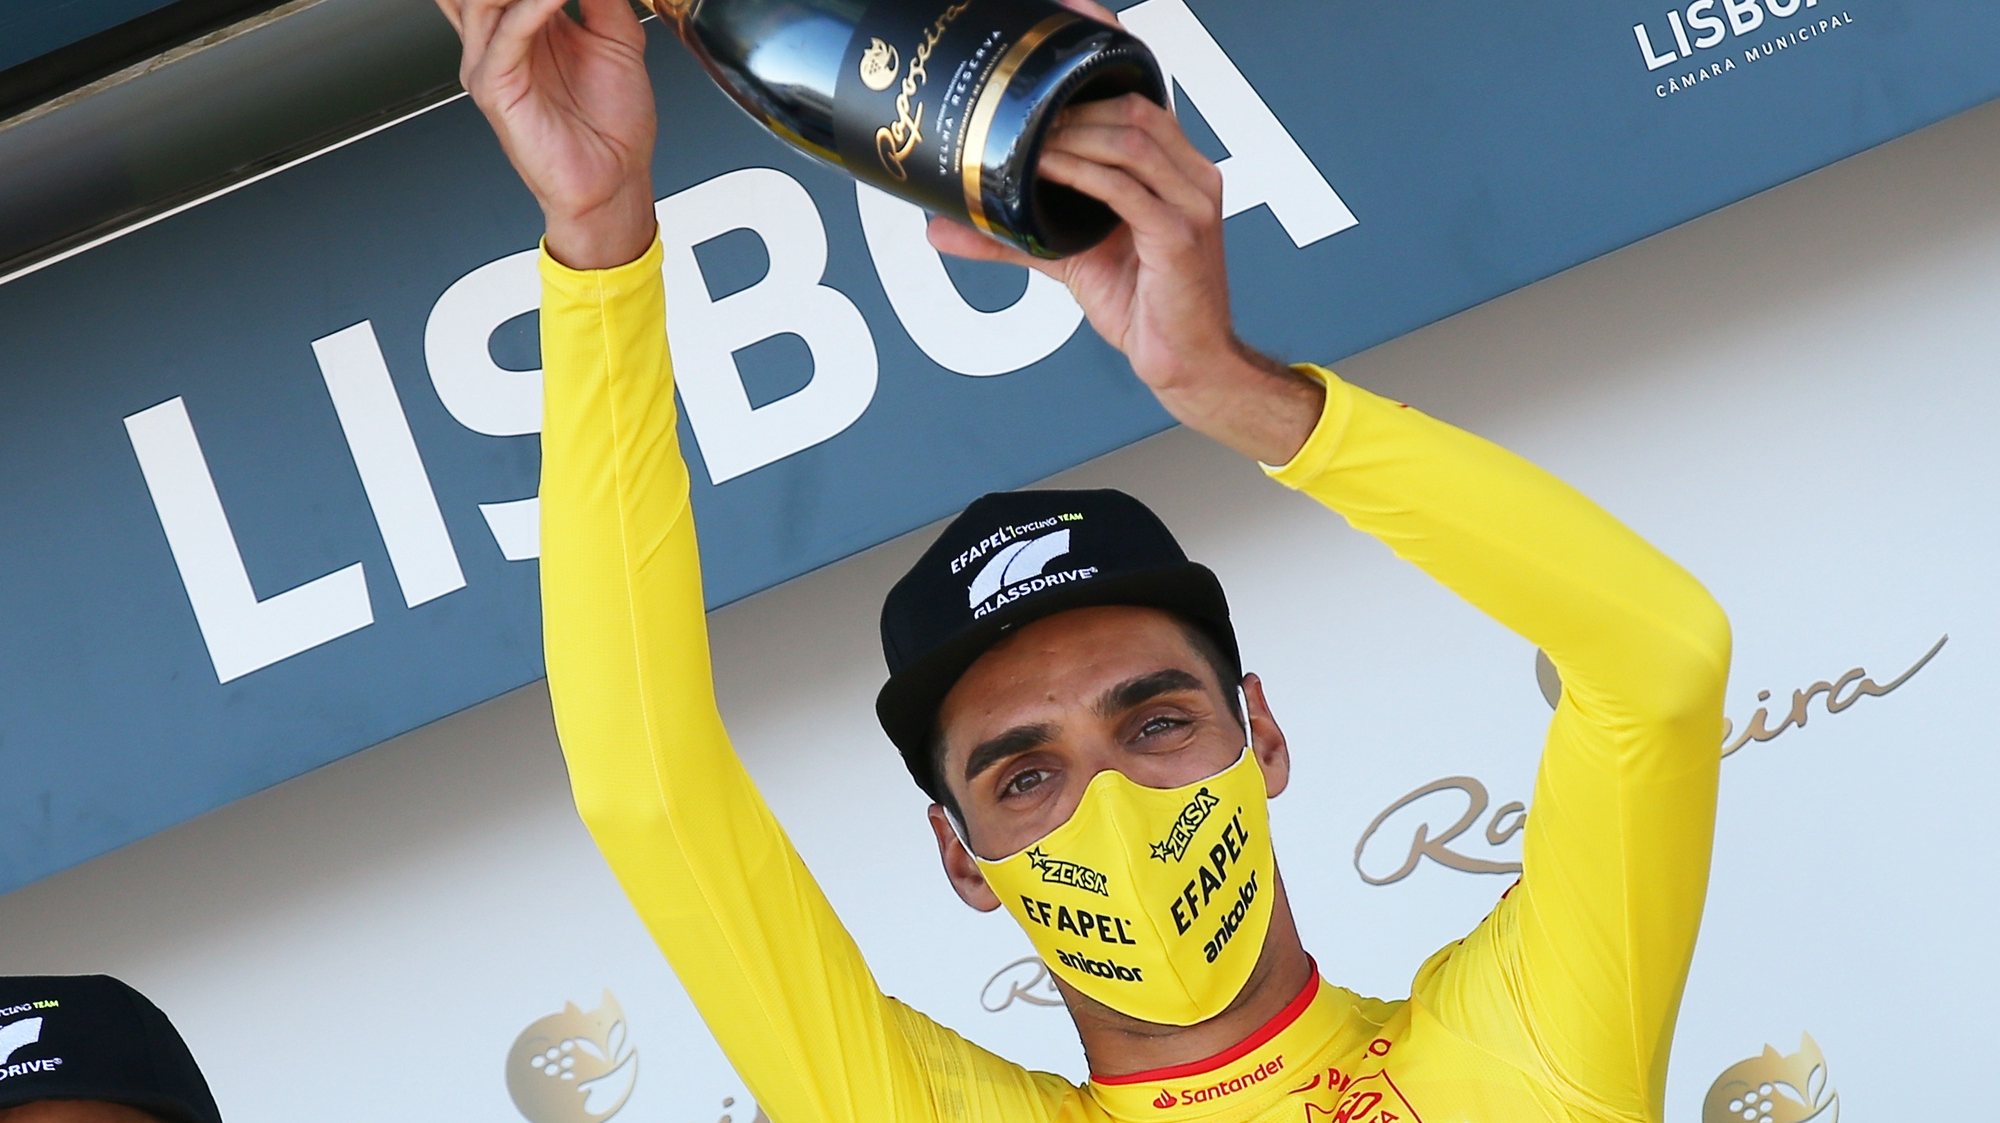 O ciclista da equipa Efapel, Rafael Reis, festeja no pódio a conquista da primeira camisola amarela de líder, após vencer o prólogo da 82ª Volta a Portugal em Bicicleta, com a distância de 5,4 km, em Lisboa, 04 de agosto de 2021. NUNO VEIGA/LUSA